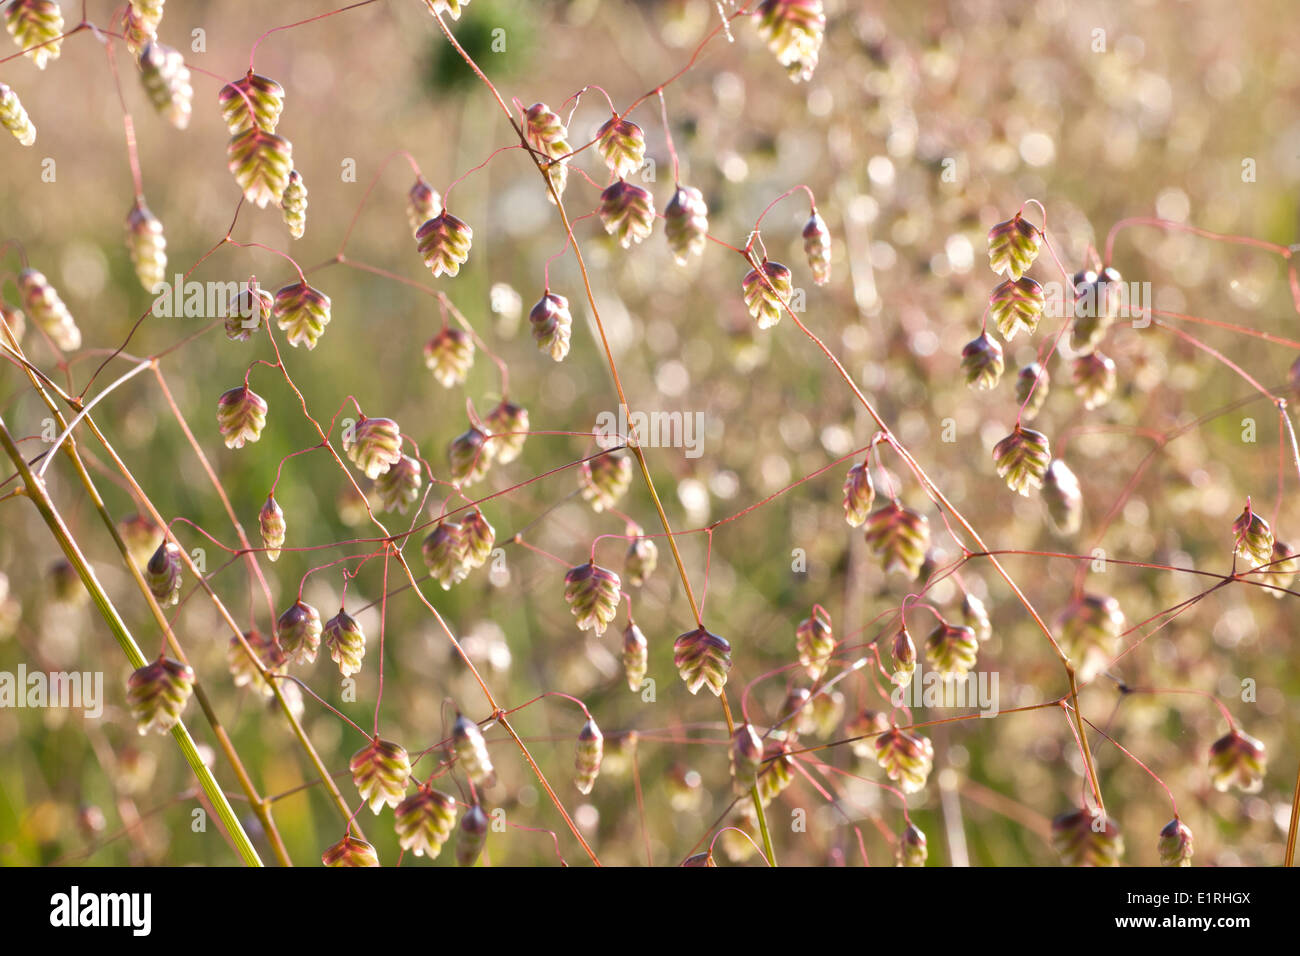 Quaking-grass in a garden. Stock Photo